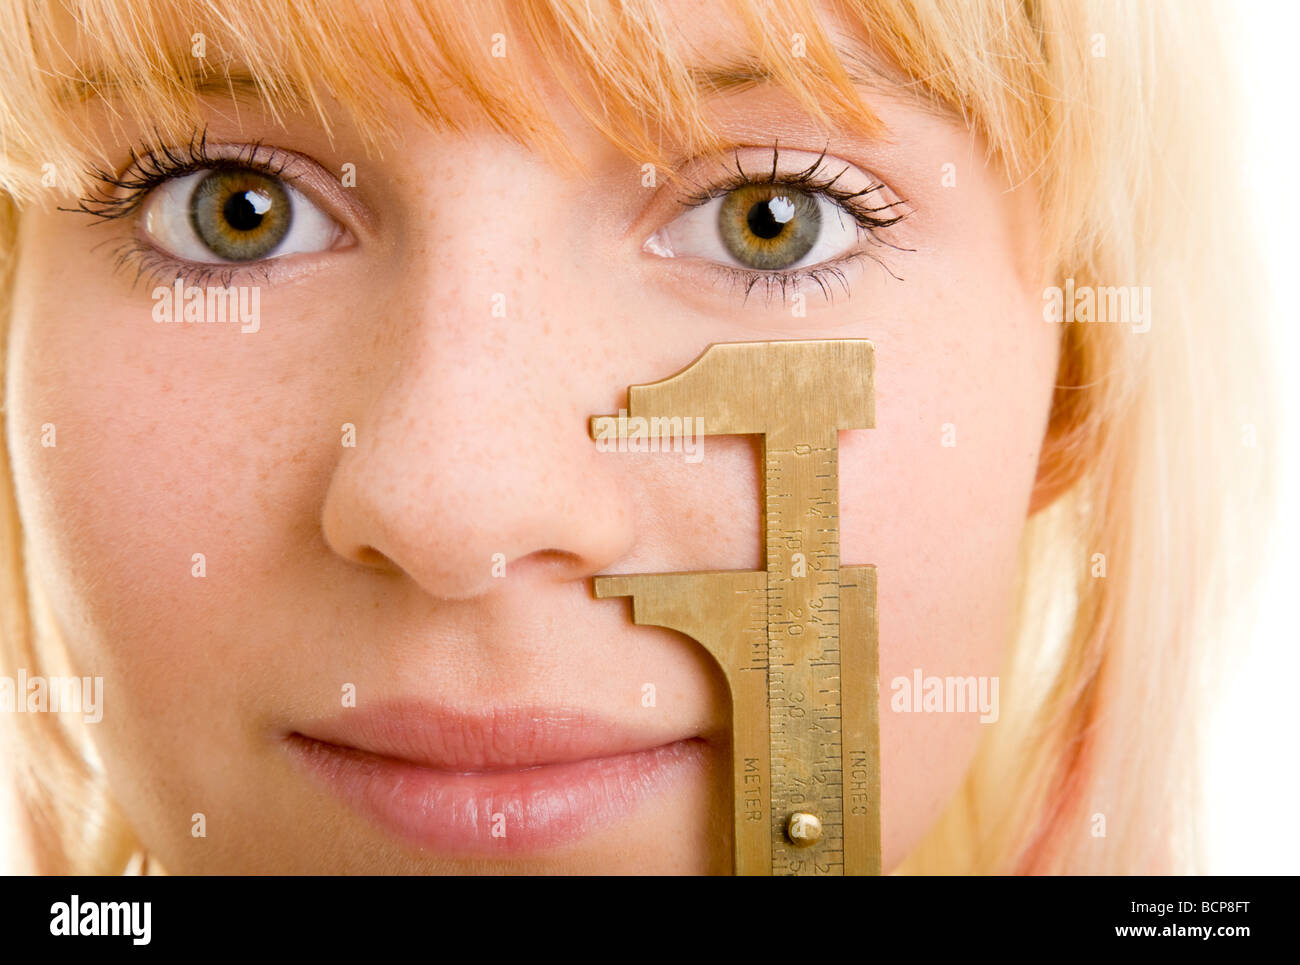 Junge blonde Frau hält sich eine Schublehre un ihre Nase Foto Stock